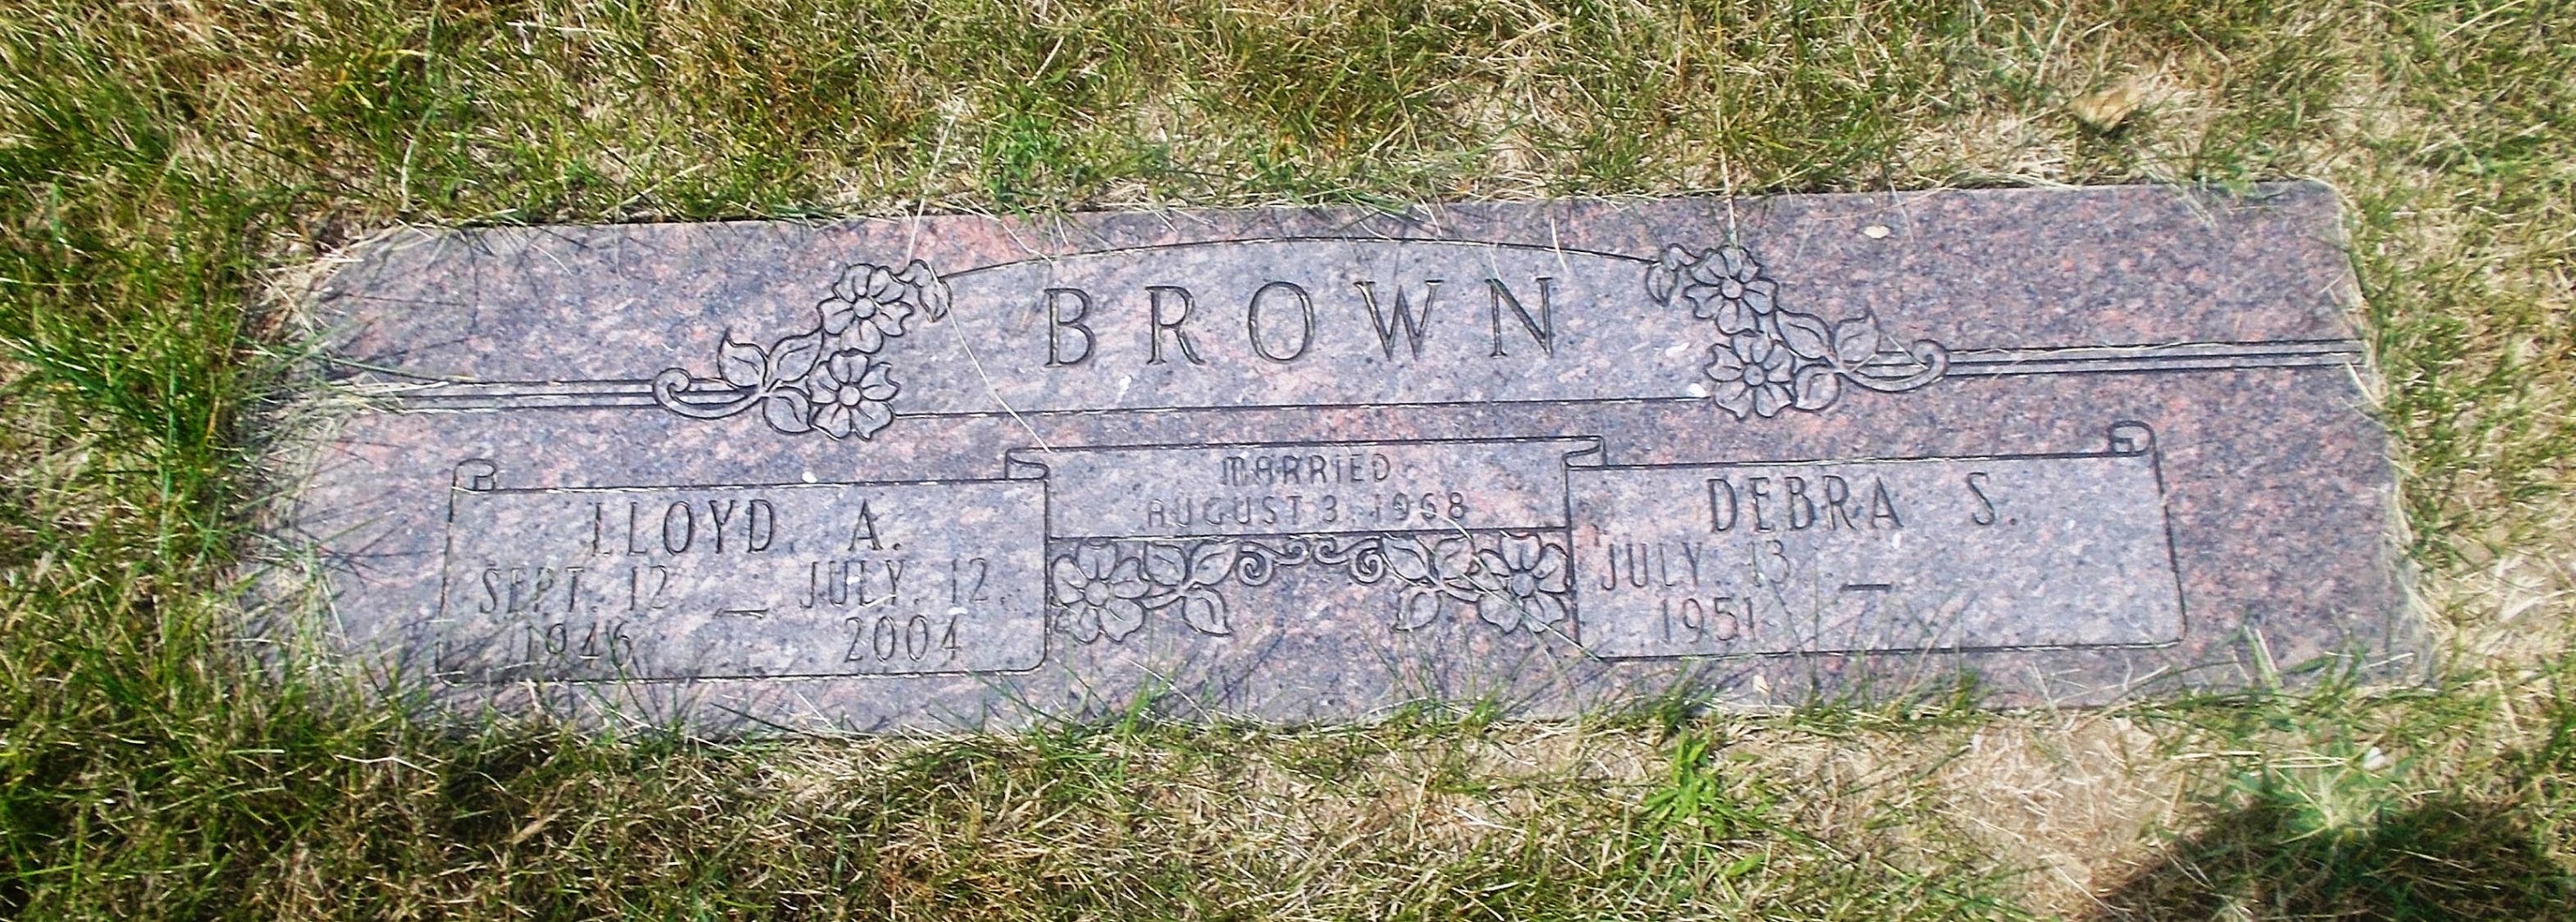 Lloyd A Brown